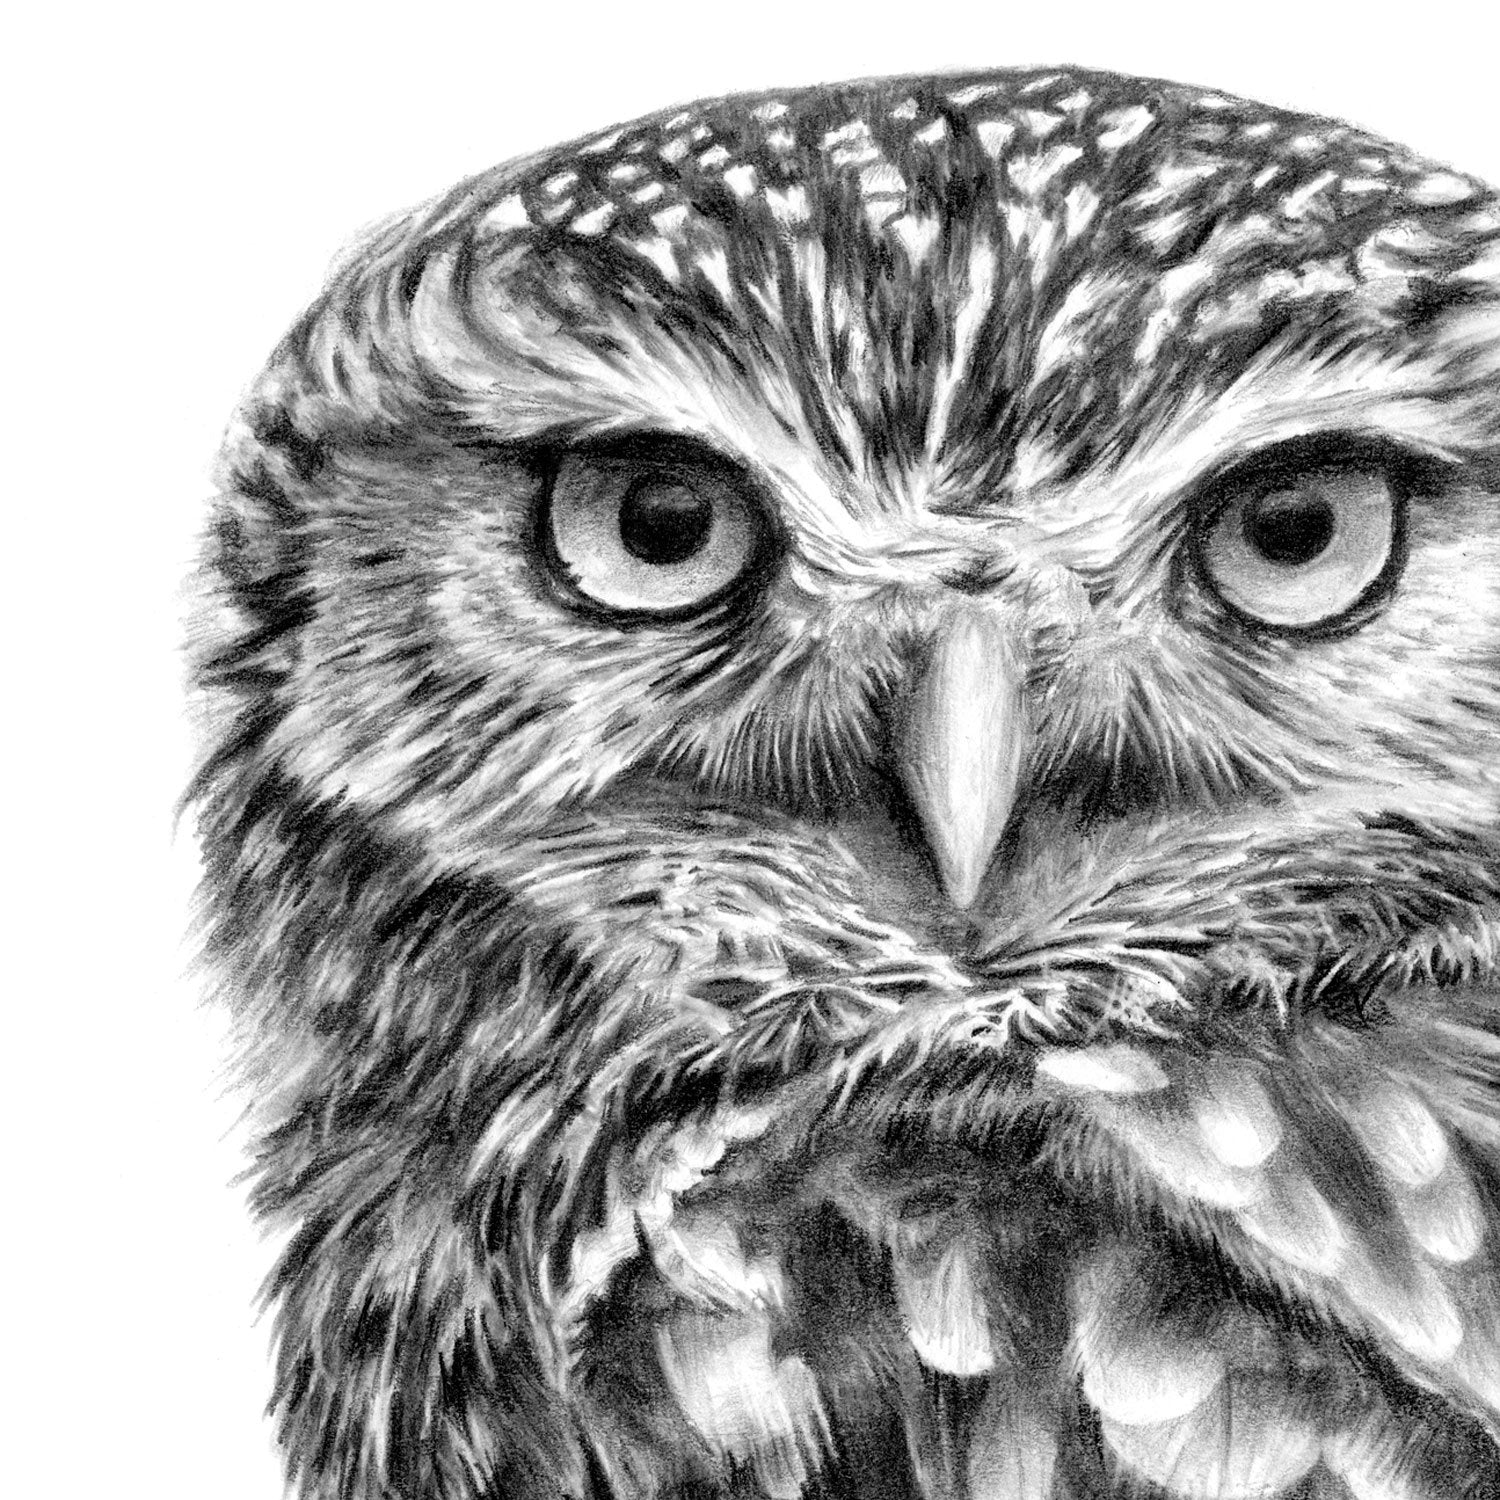 Little Owl Art Prints by British Bird Artist Jill Dimond — TheThrivingWild